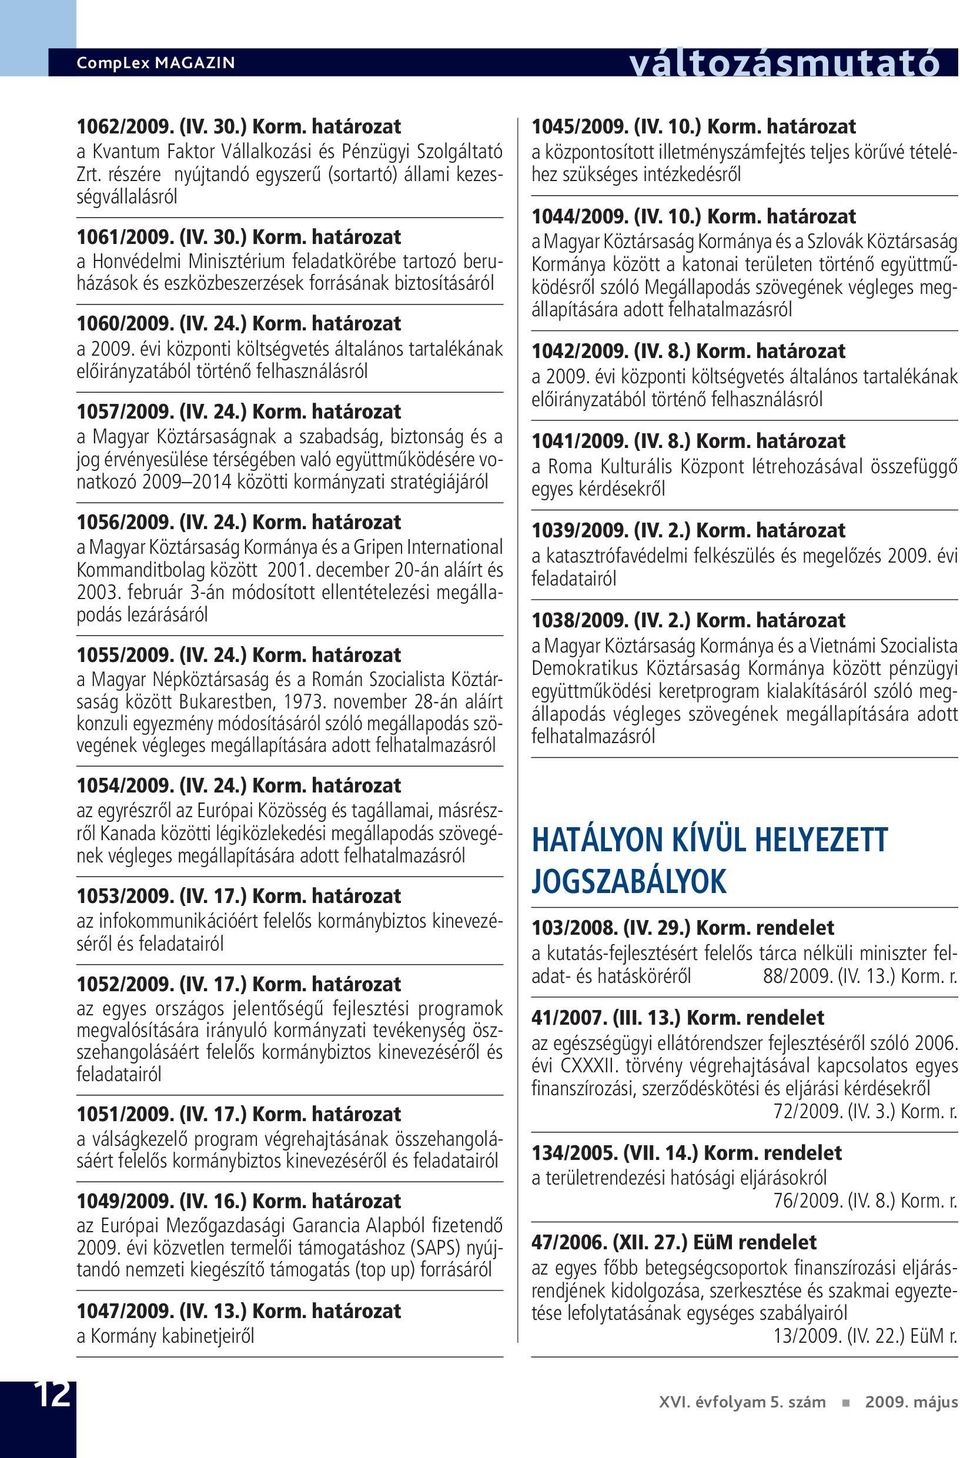 (IV. 24.) Korm. határozat a Magyar Köztársaság Kormánya és a Gripen International Kommanditbolag között 2001. december 20-án aláírt és 2003.